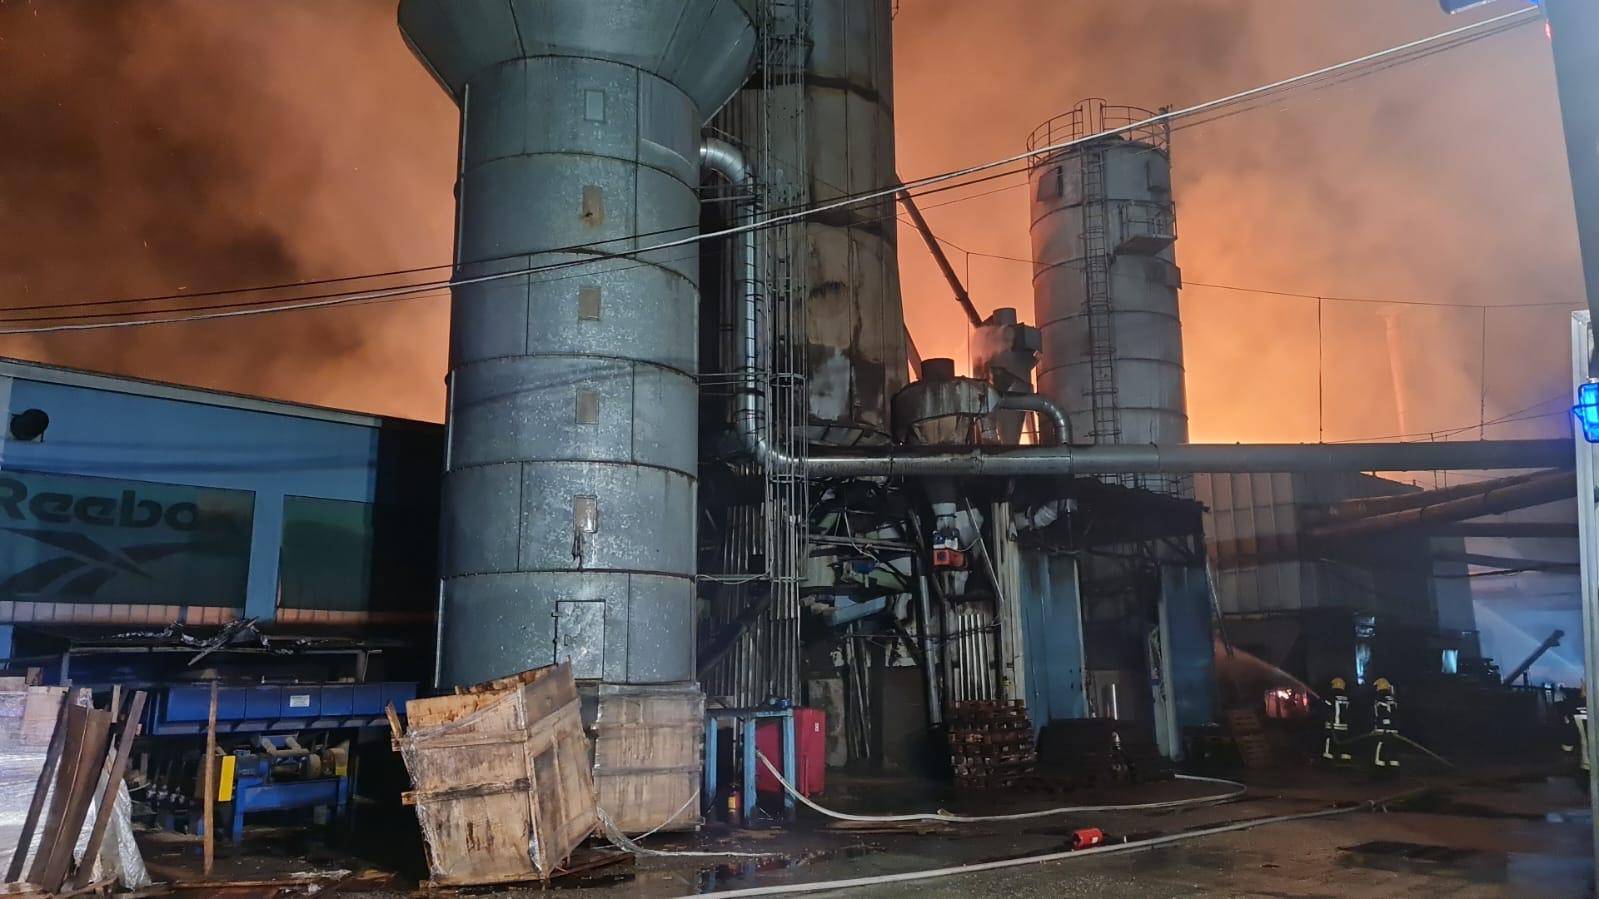 Detalji buktinje kod Mraclina: Uz požar izbila i eksplozija u tvornici, radnik (51) ozlijeđen